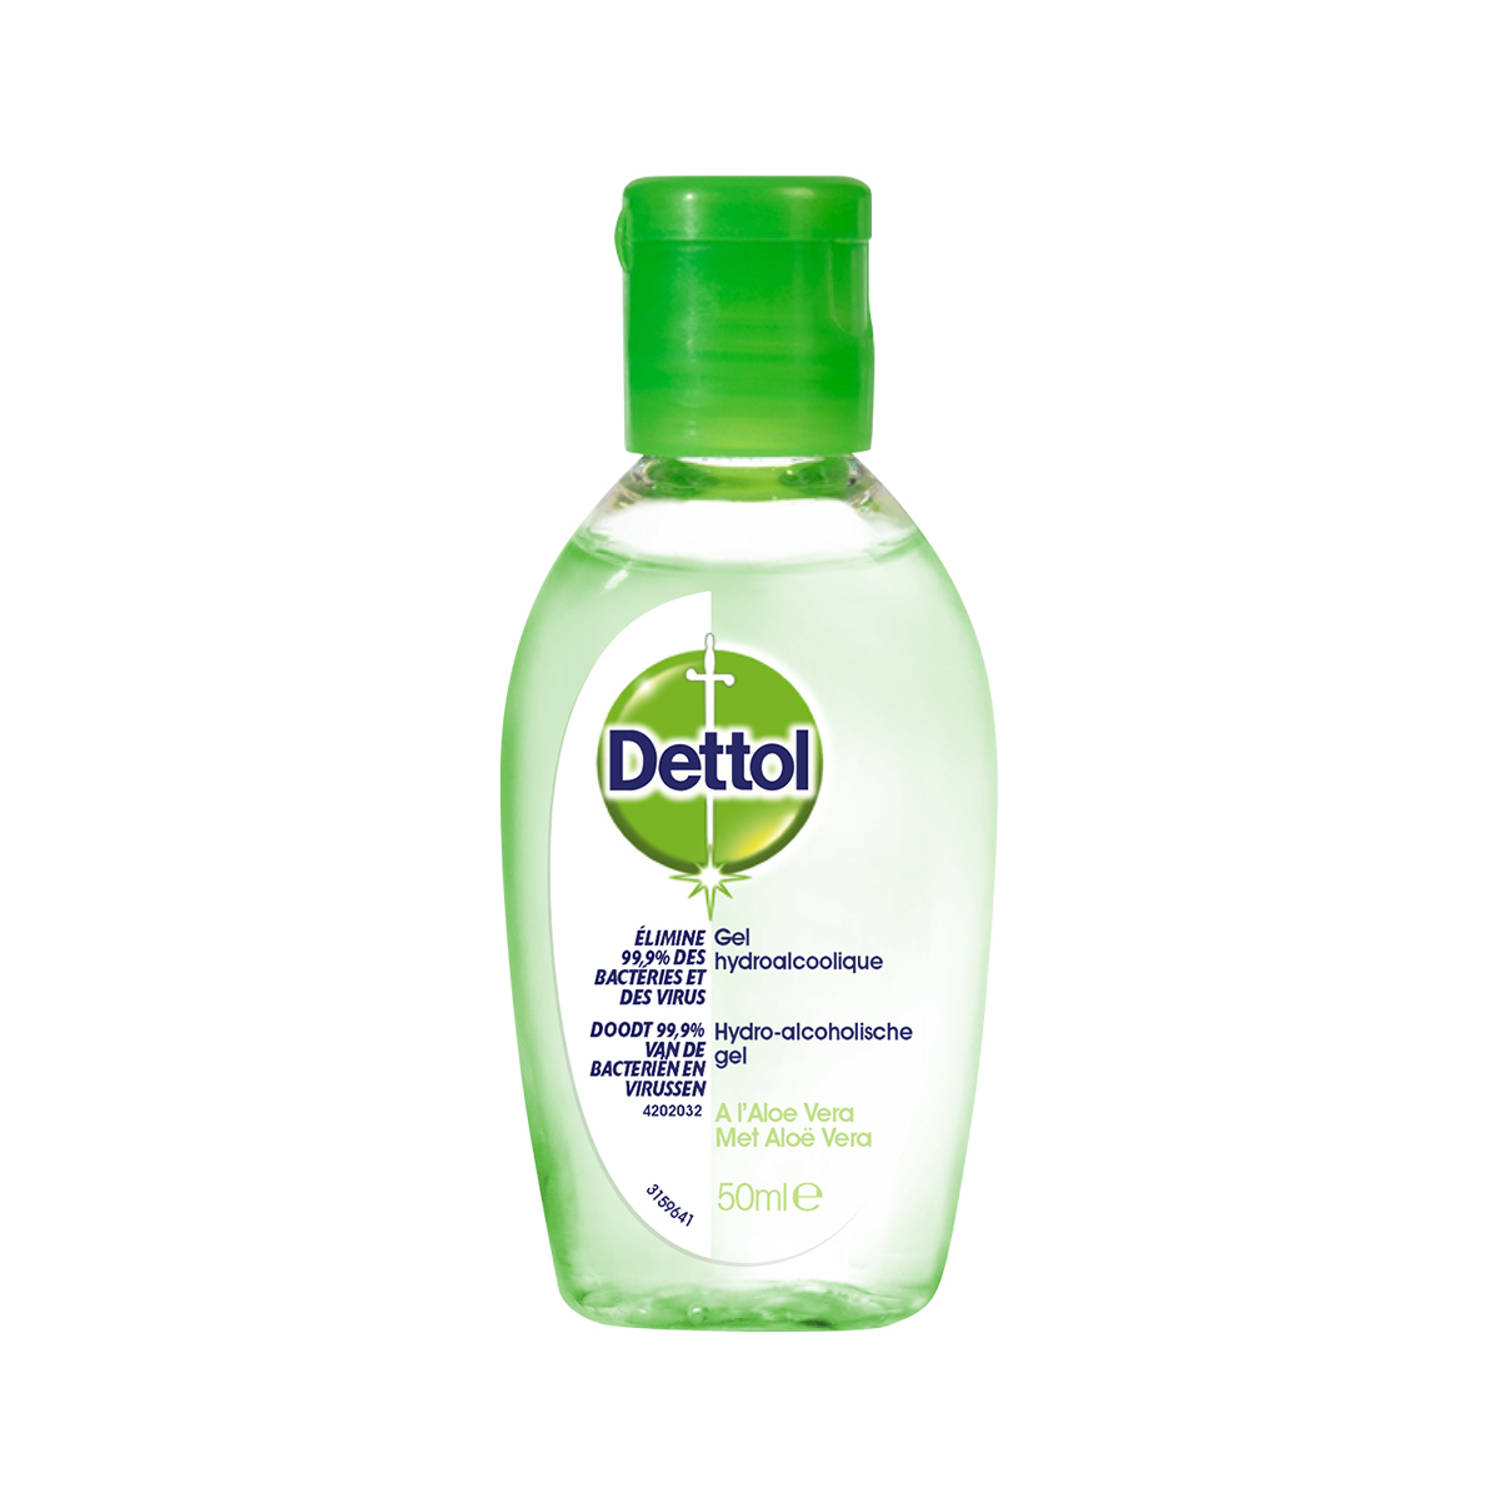 DettolHandgel- Hygiene - Verwijdert 99,9% Van De Bacteriën En Virussen - 50ml